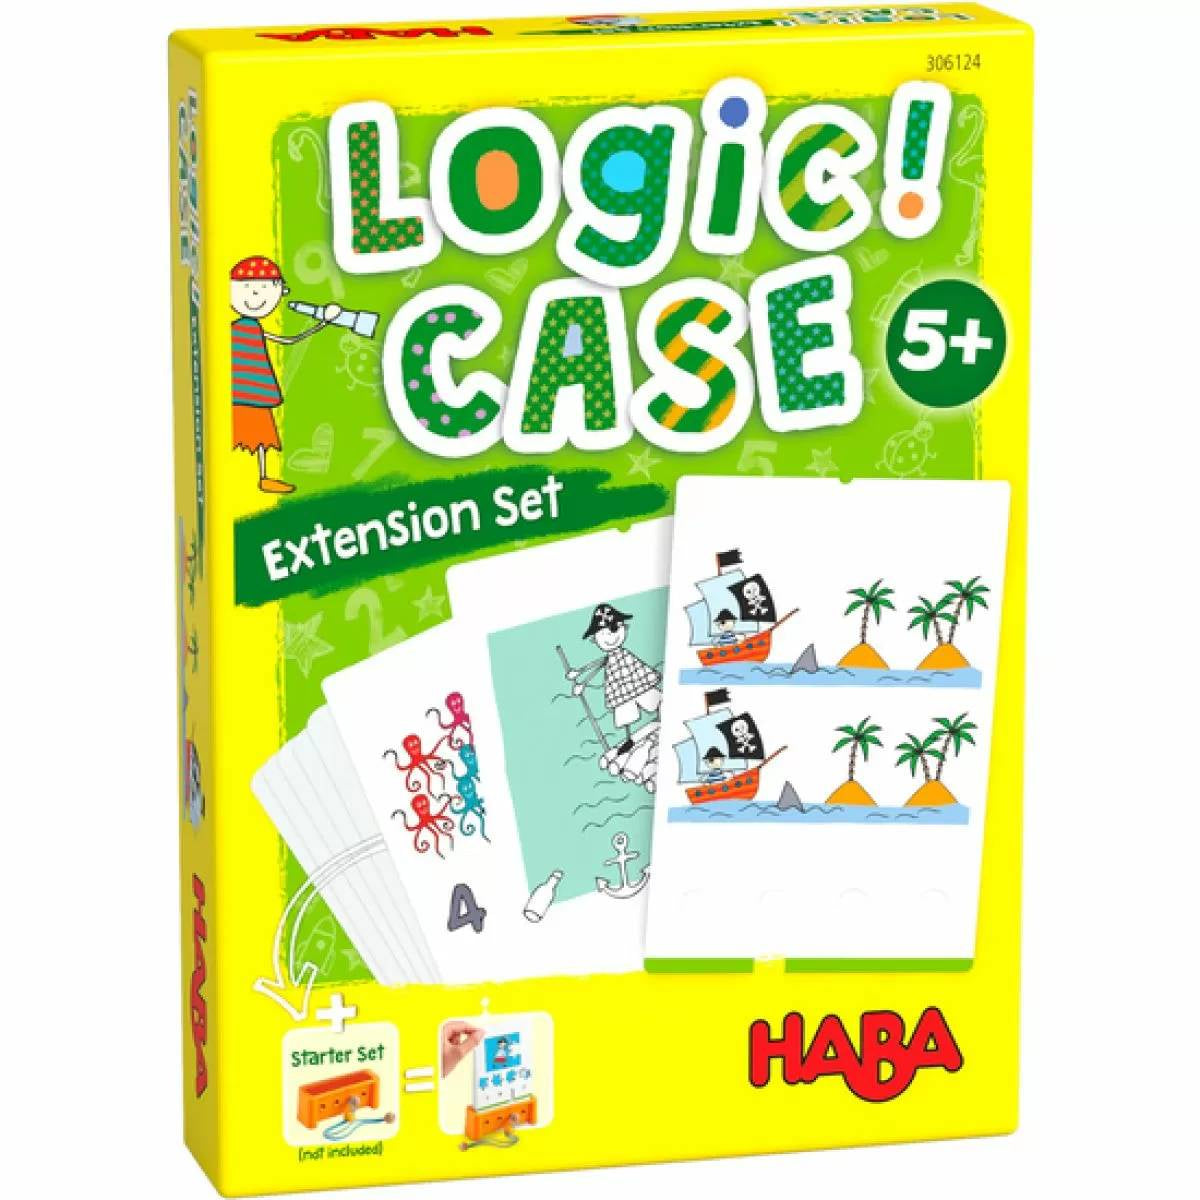 Logic Case Expansion Set 5+ Pirates